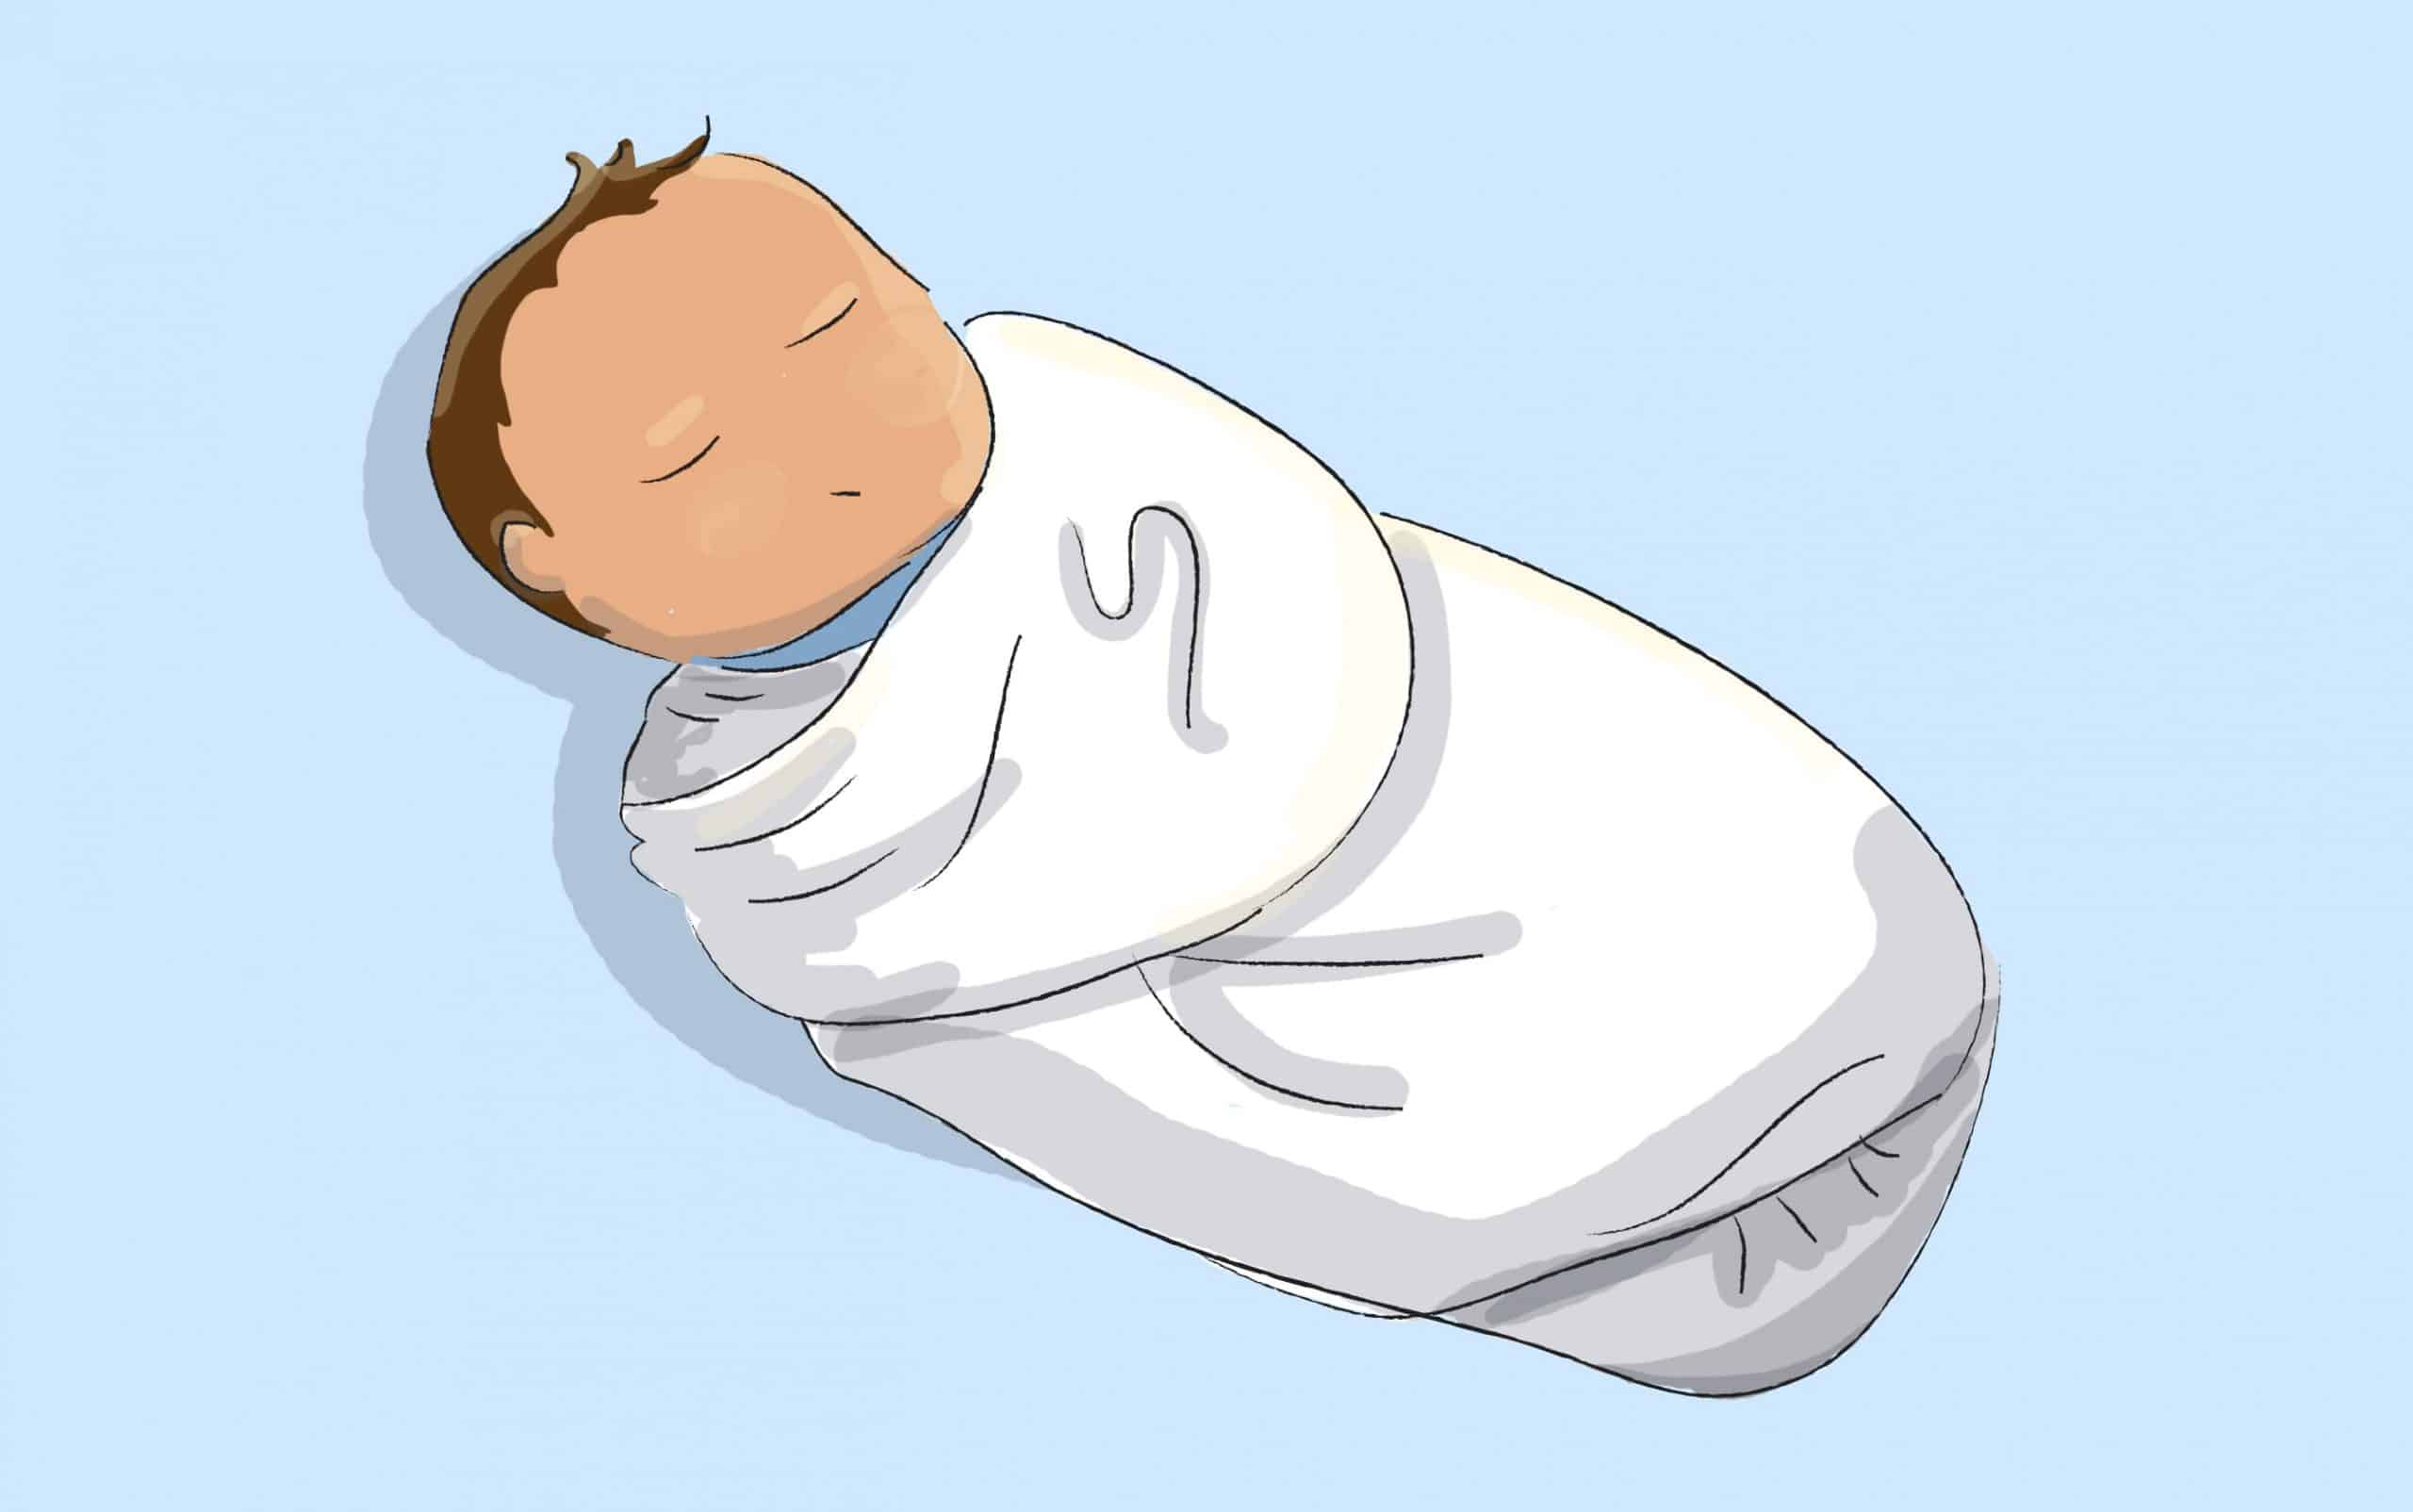 עיטוף בשמיכה דקה או בחיתול בד גדול יכול לסייע לתינוק להירגע ולהירדם על גבו ביתר קלות